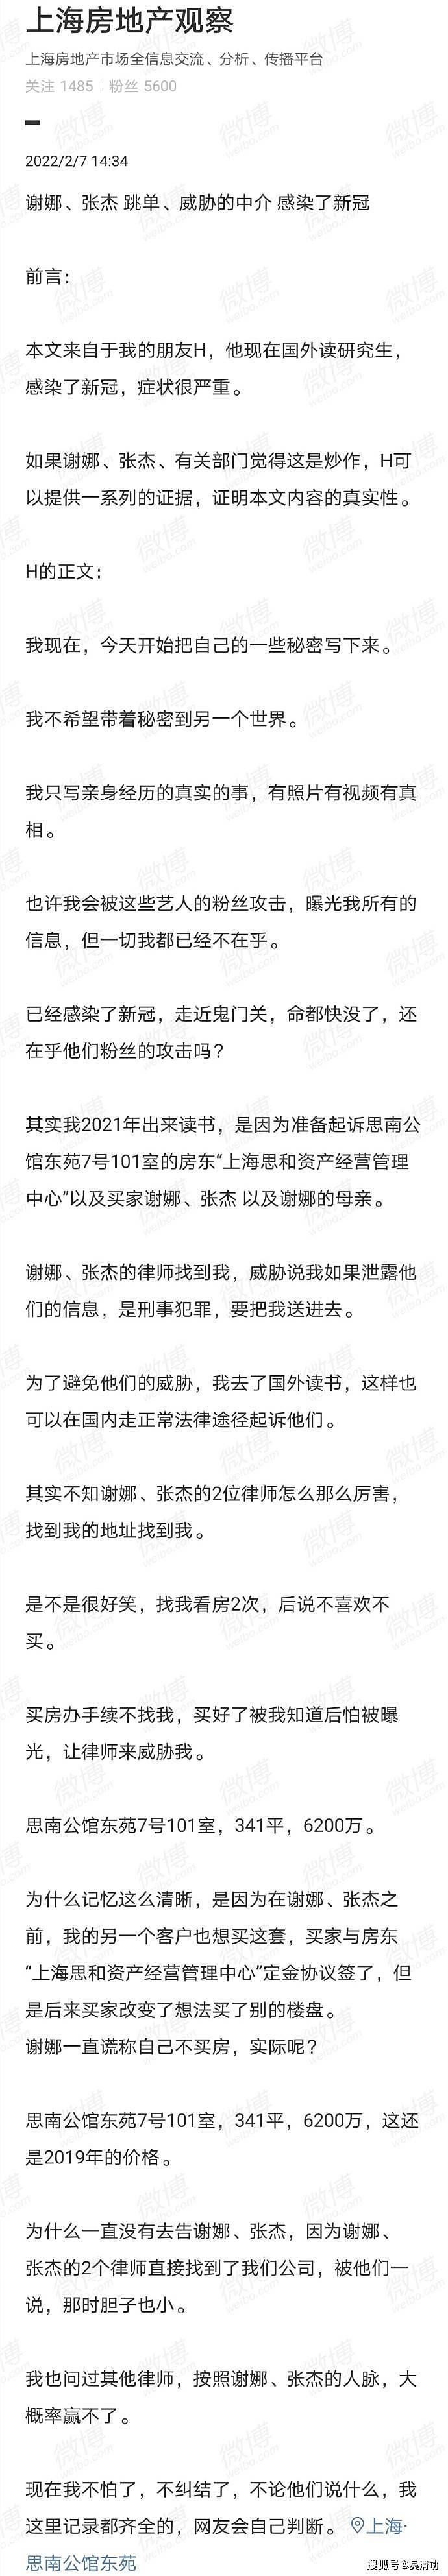 张杰和谢娜联合发布声明，否认买豪宅跳单，反诉对方侵犯隐私权 - 2